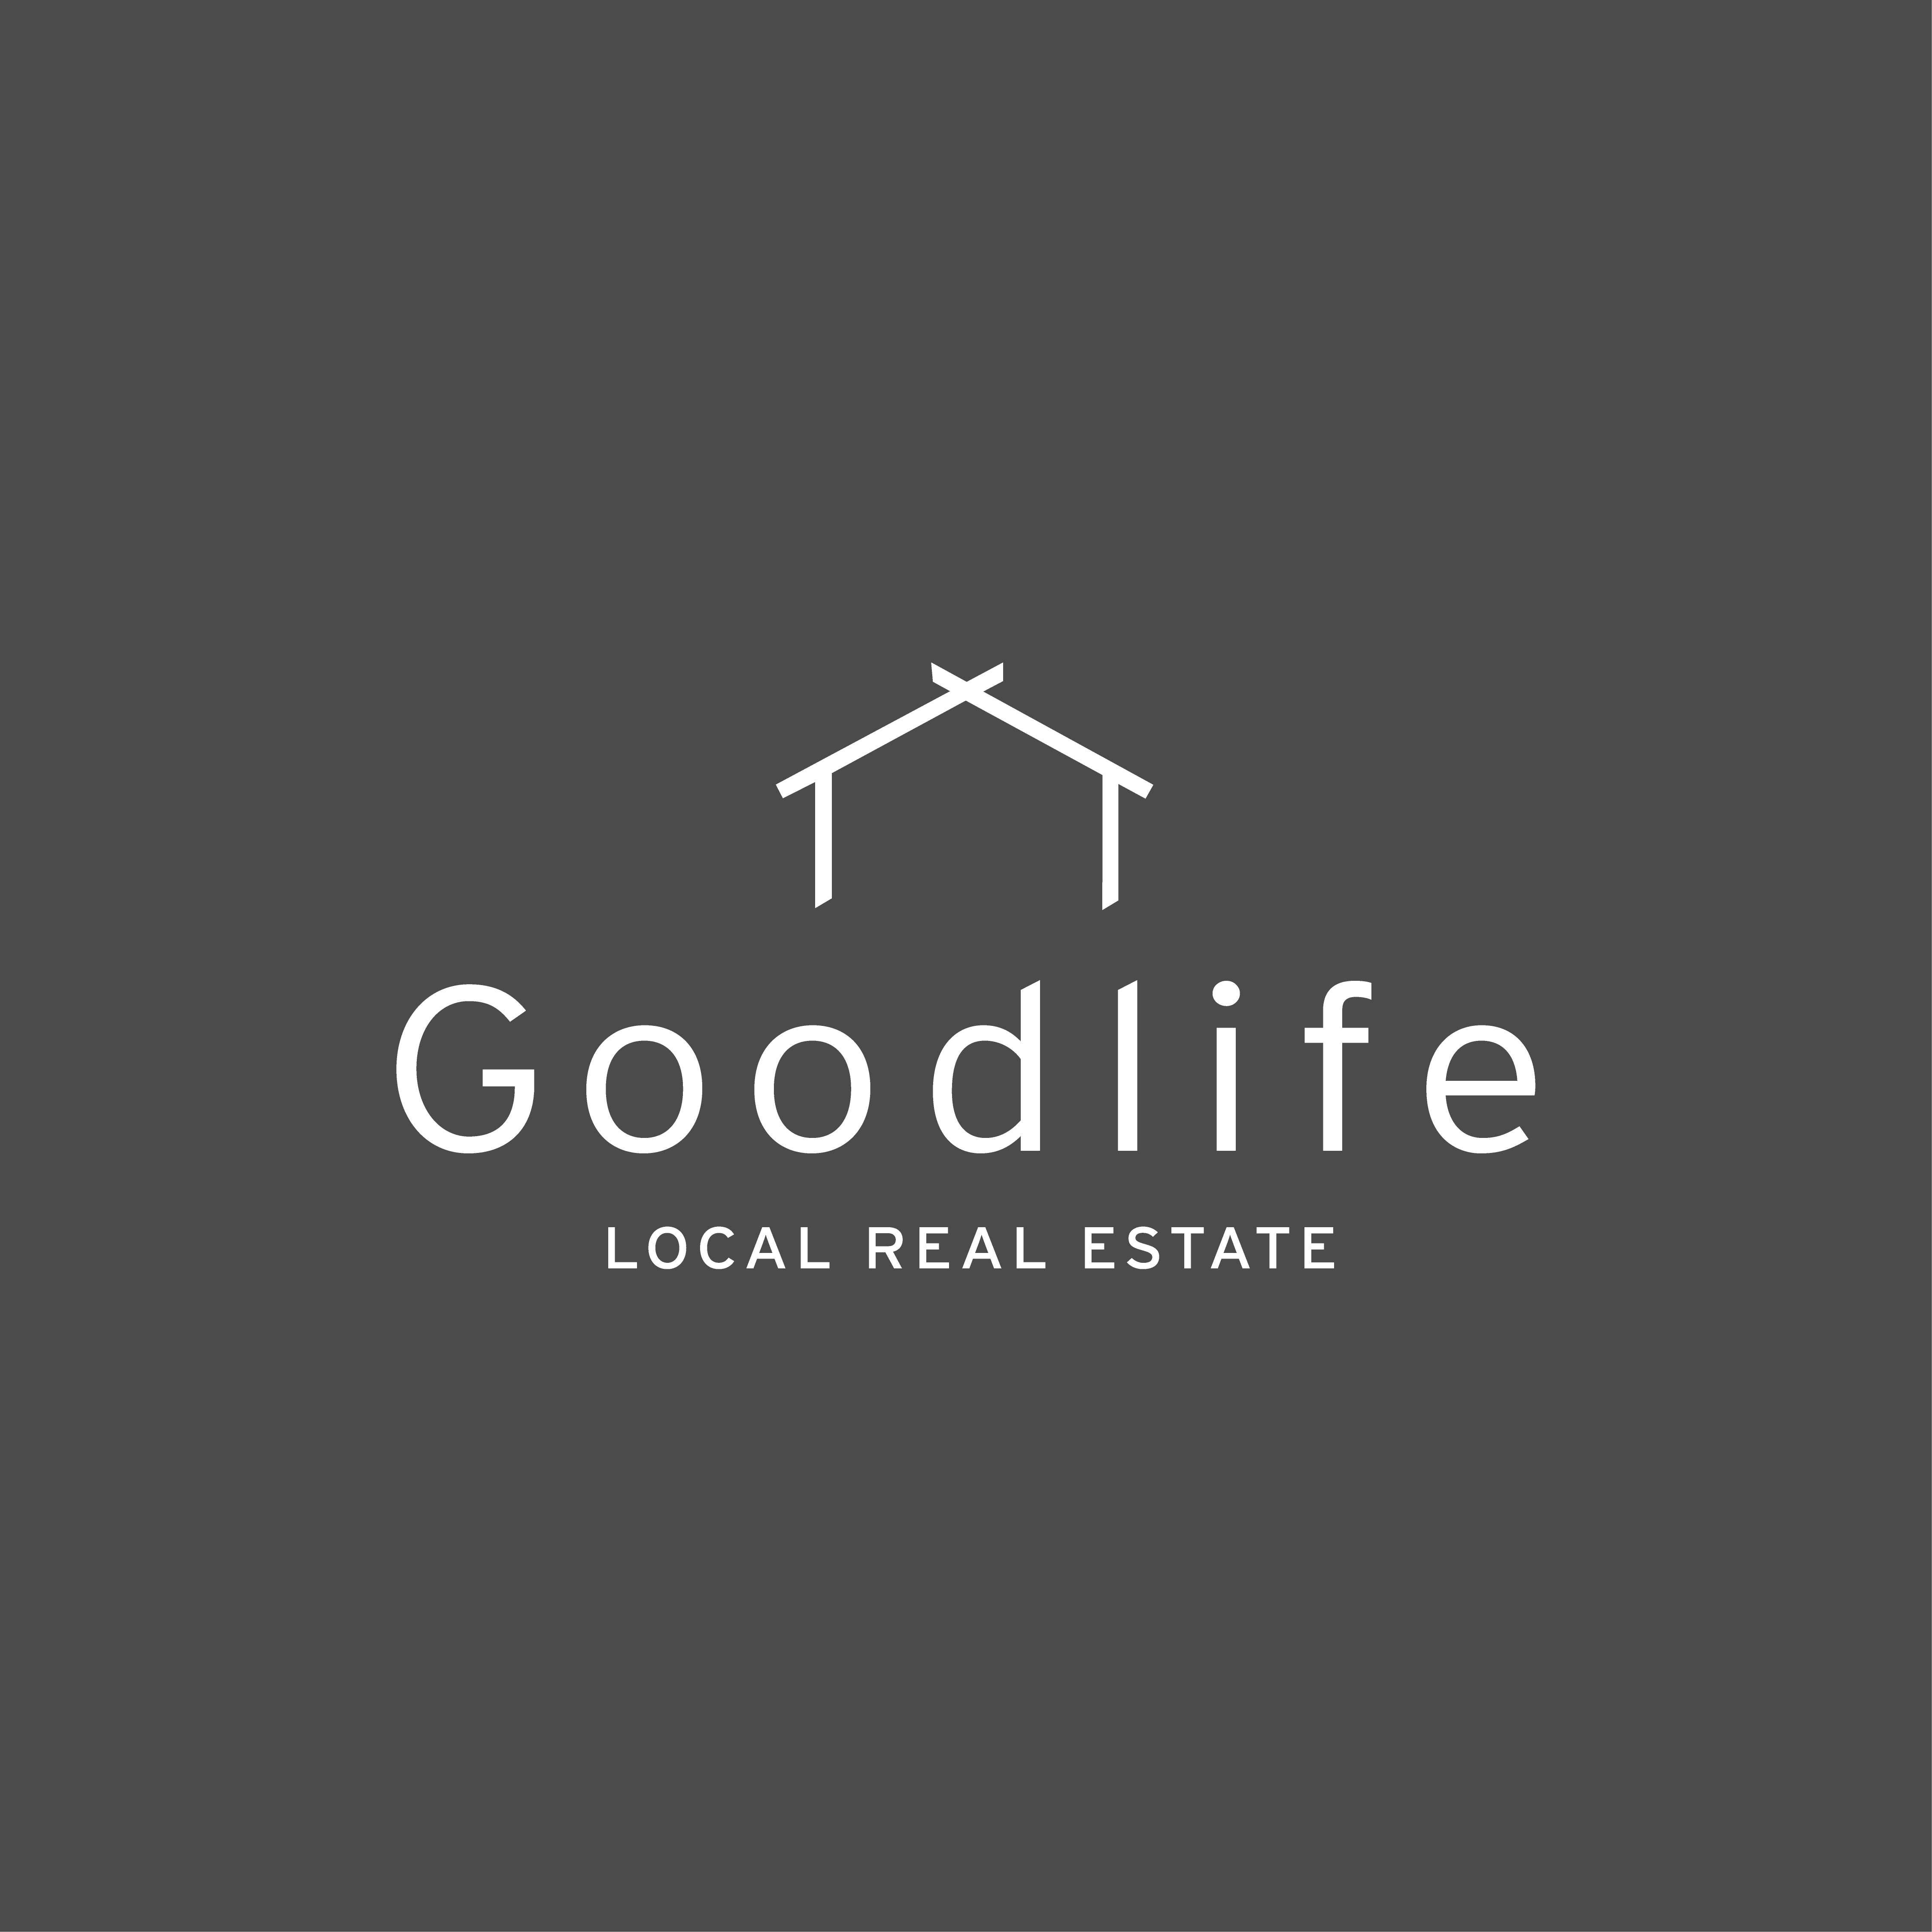 Goodlife Local Real Estate Logo